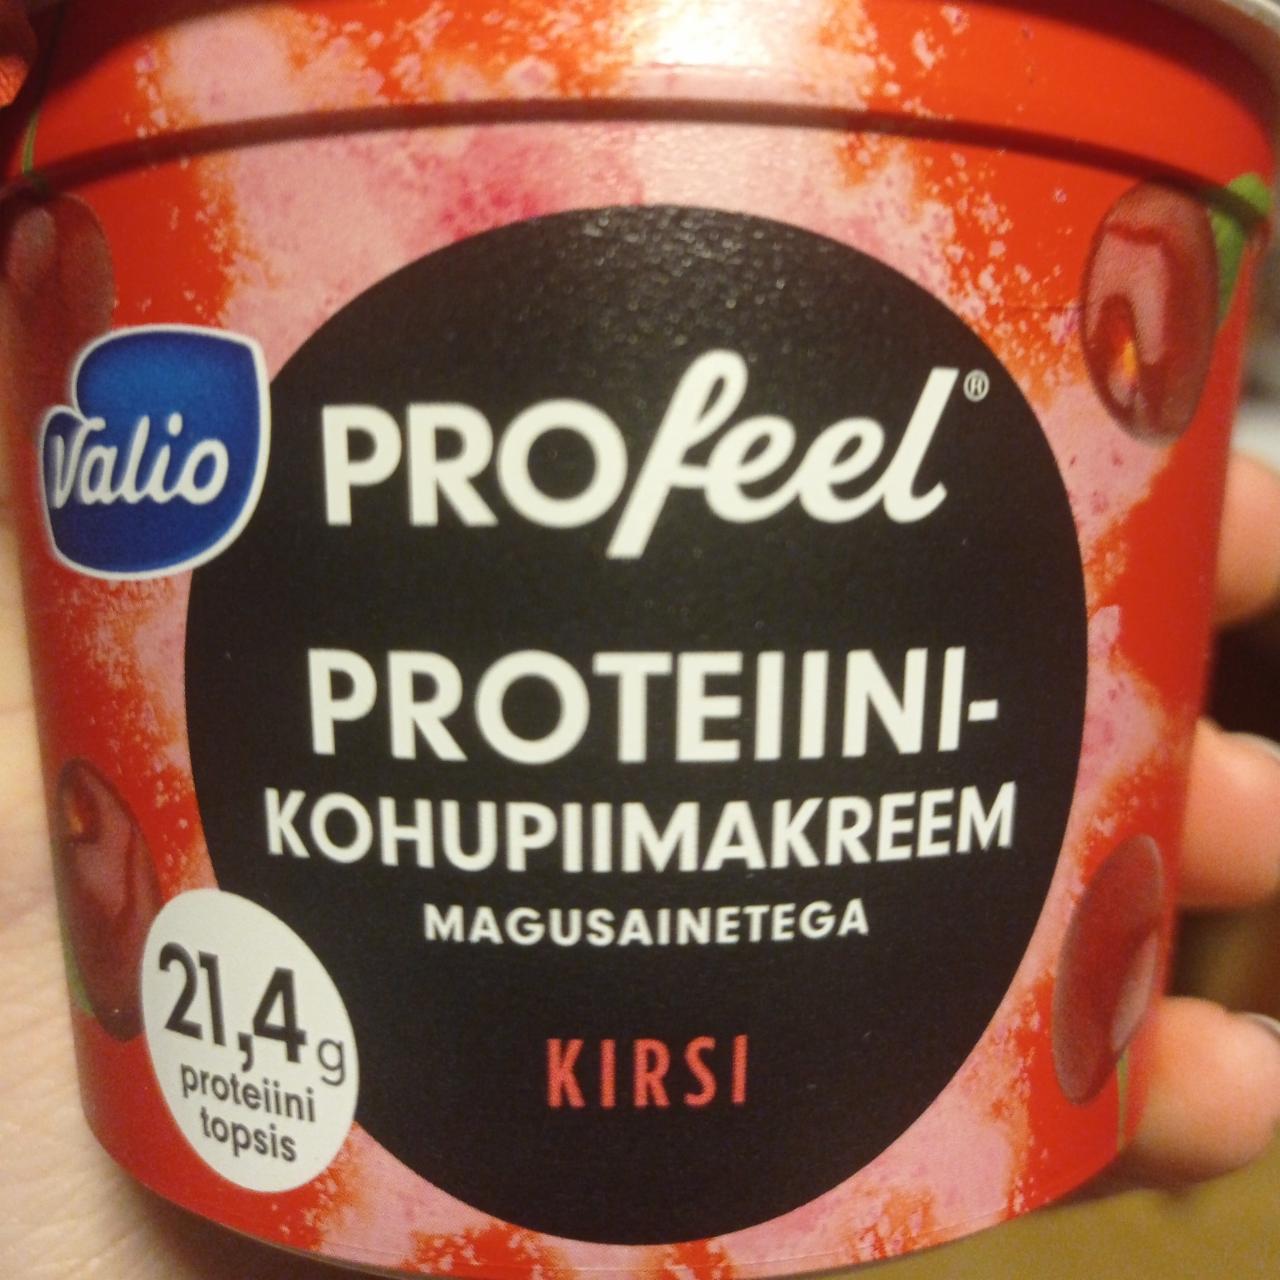 Фото - Протеин вишневый творожный крем Protein curd cream with sweeteners cherry PROfeel Valio